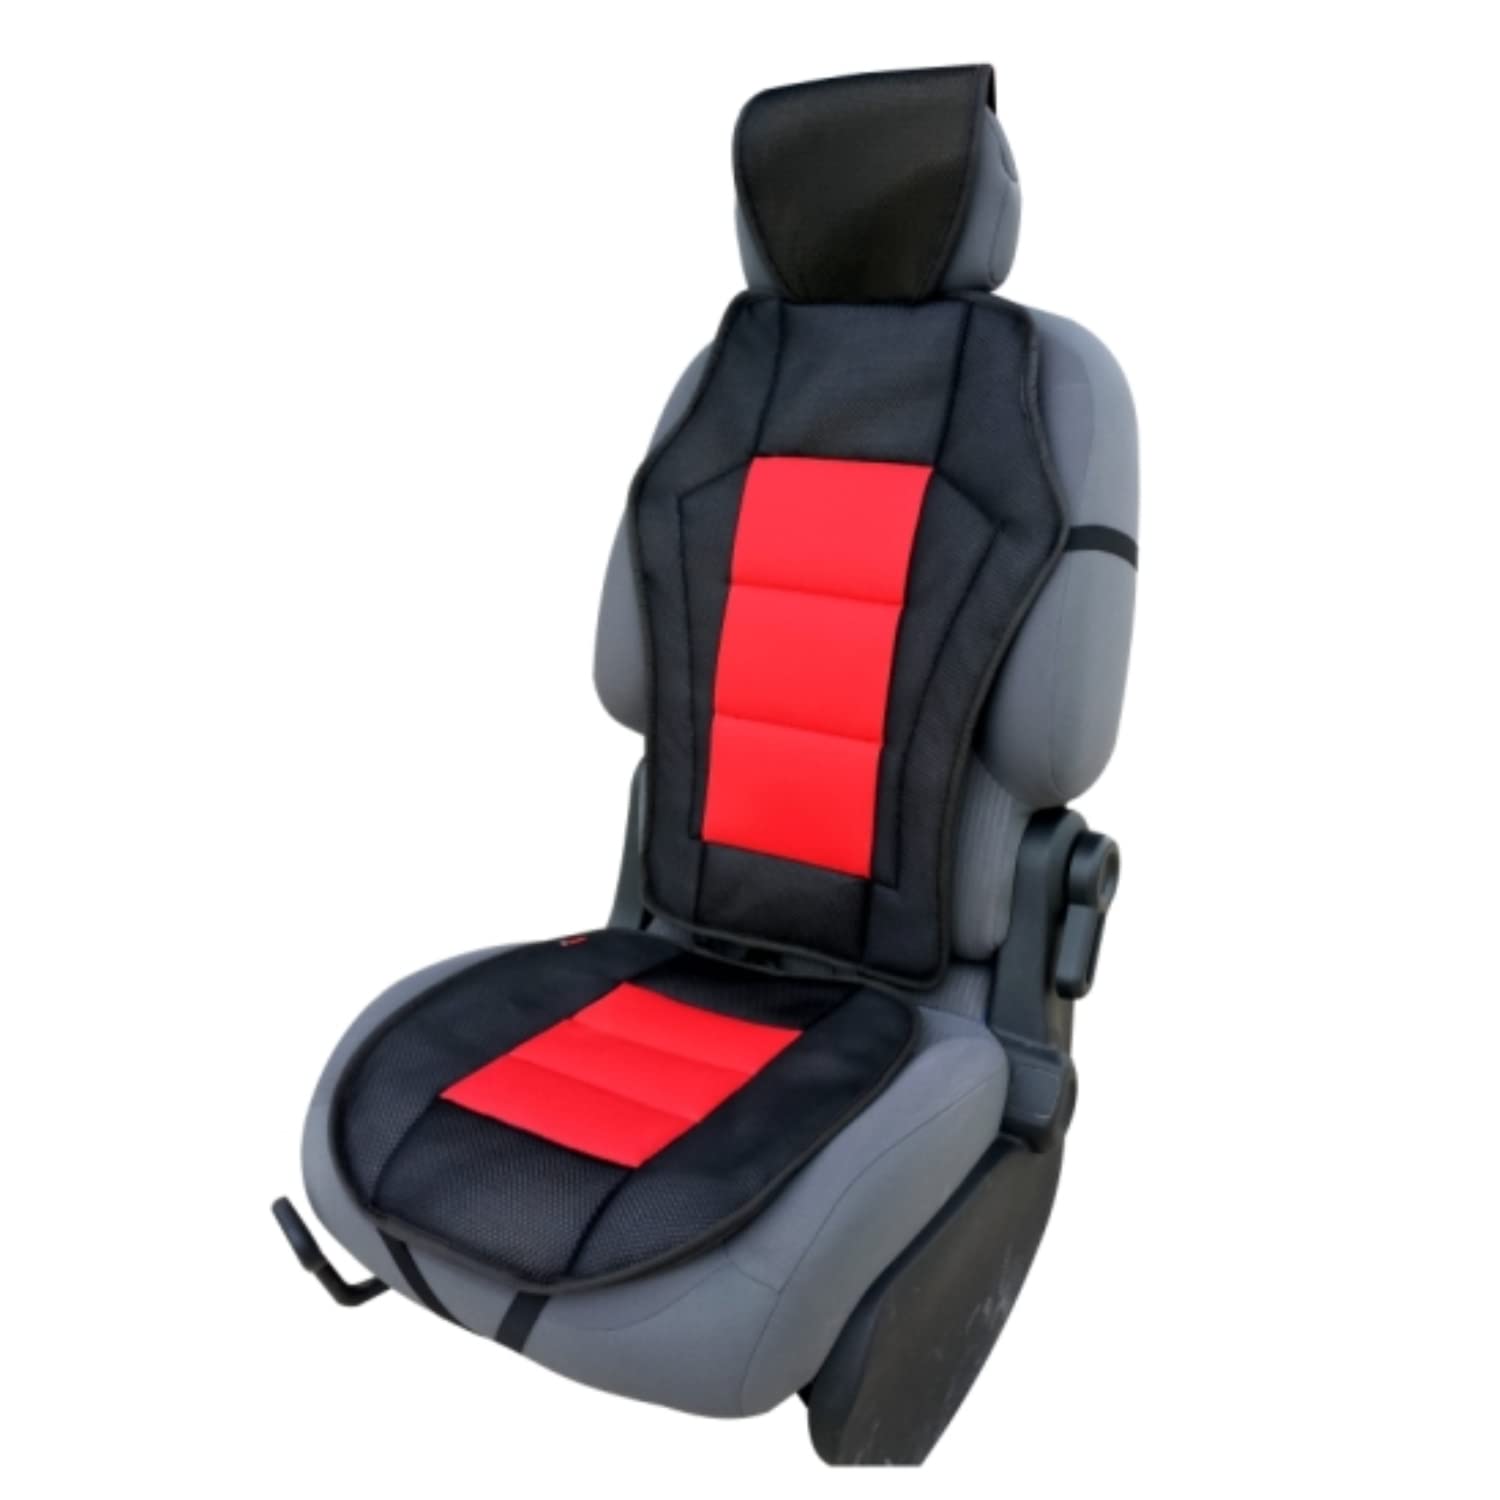 CSC201 - Sitzauflage Sitzpolster Rot, Schwarz von akhan